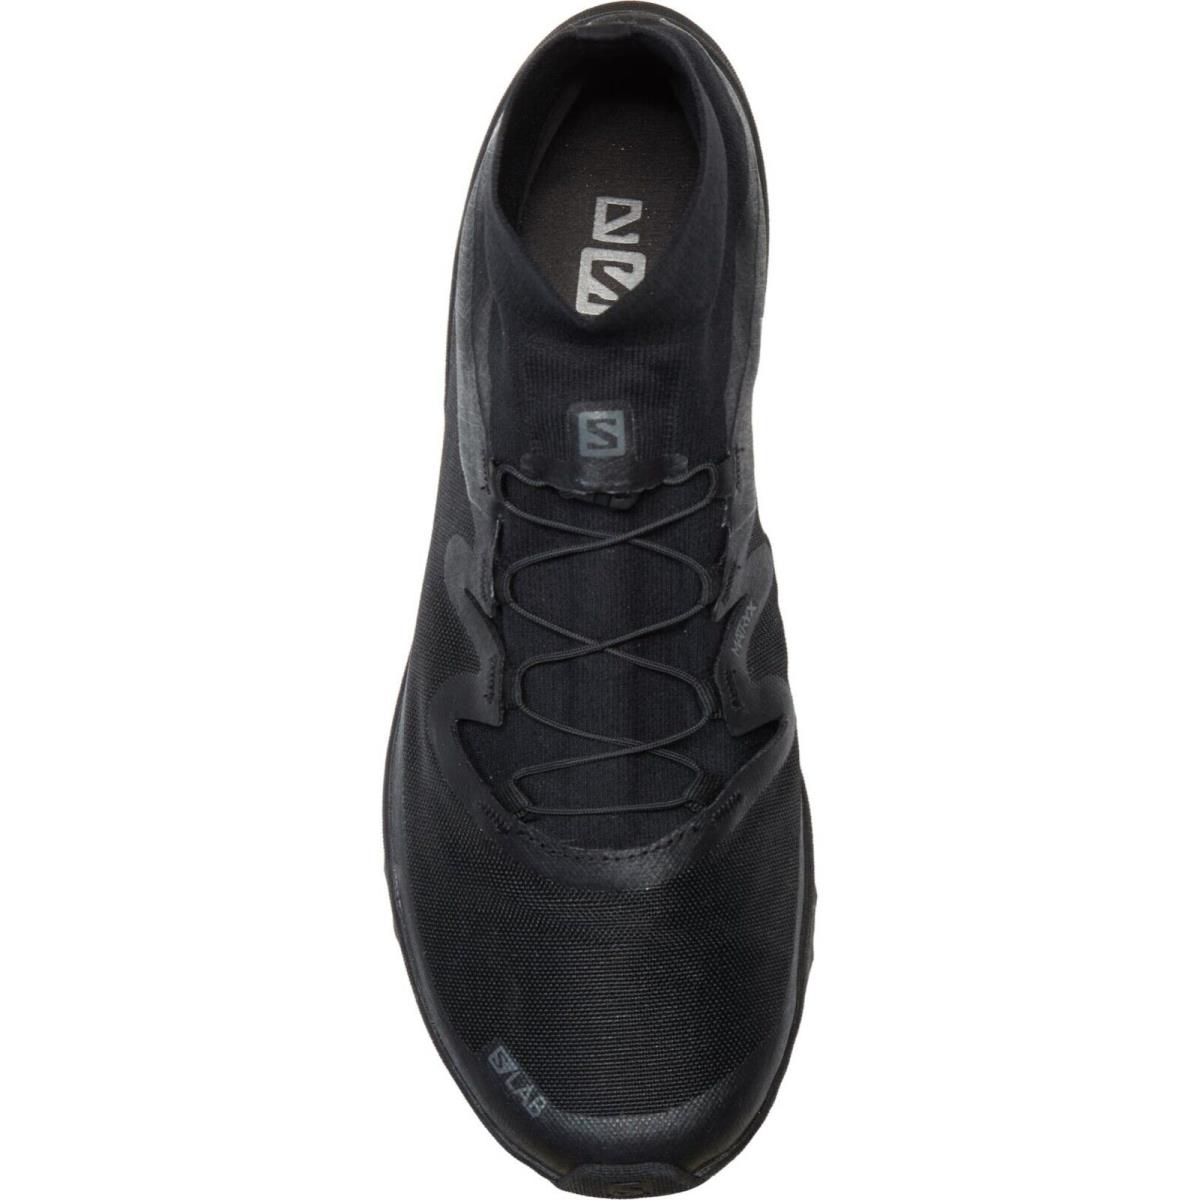 Salomon shoes  - Black 9